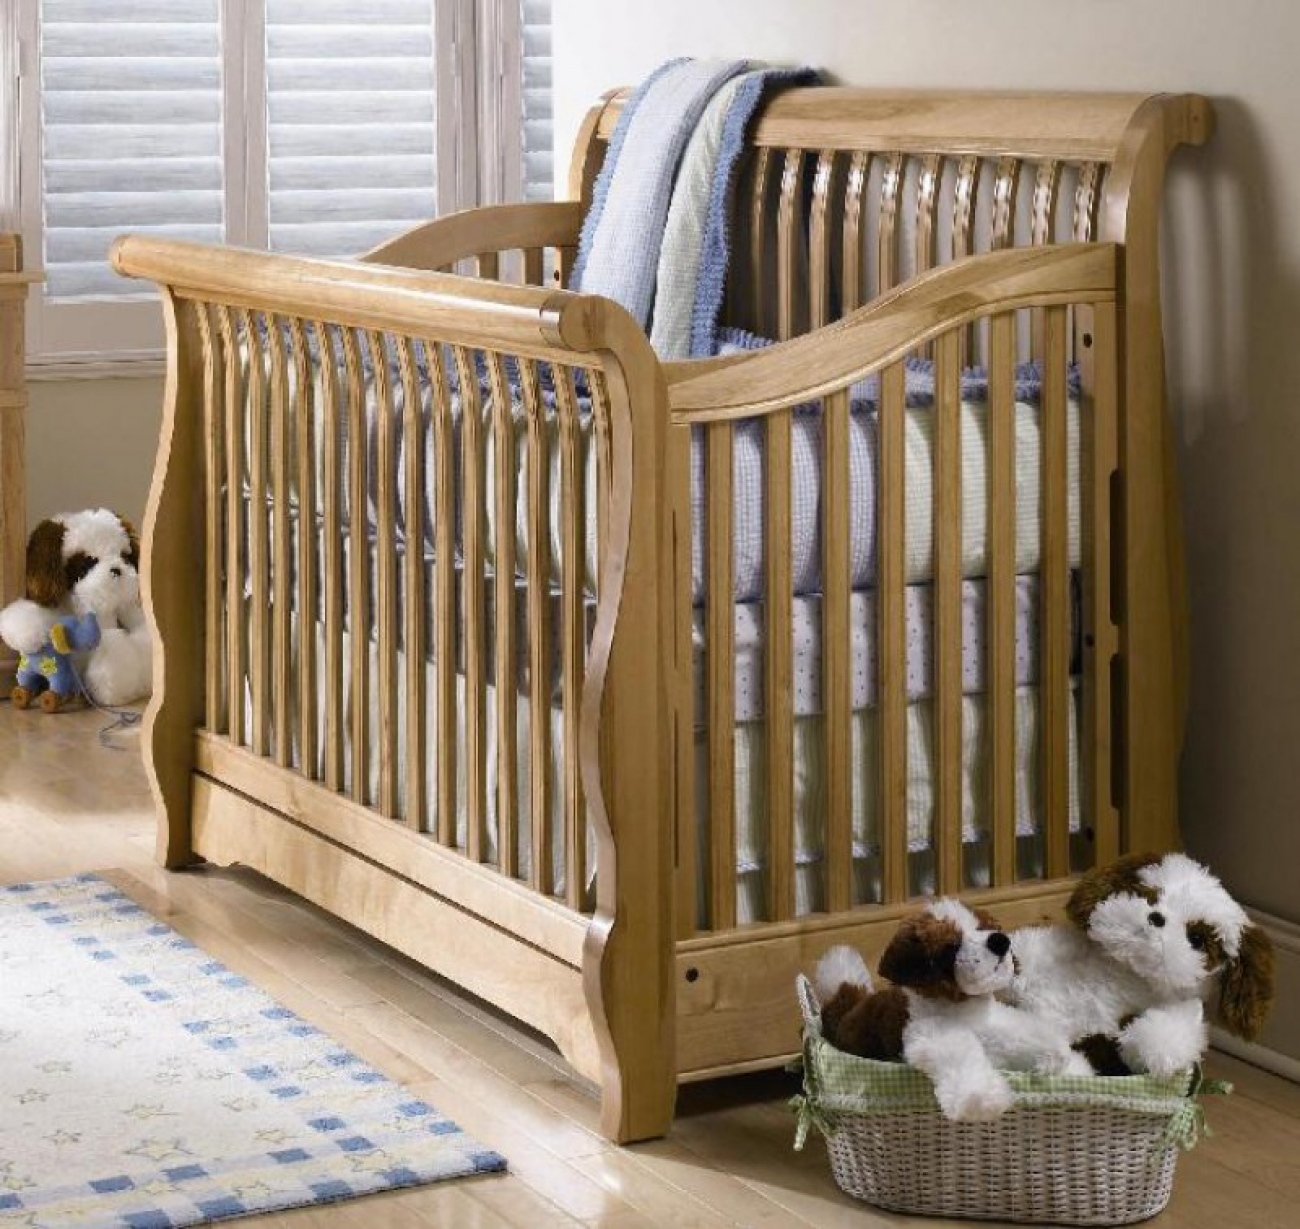 Детской кроватки baby. Кровать детская Baby Crib. Деревянная кроватка для новорожденного. Кроватки для новорожденных из дерева. Ребенок в кроватке.